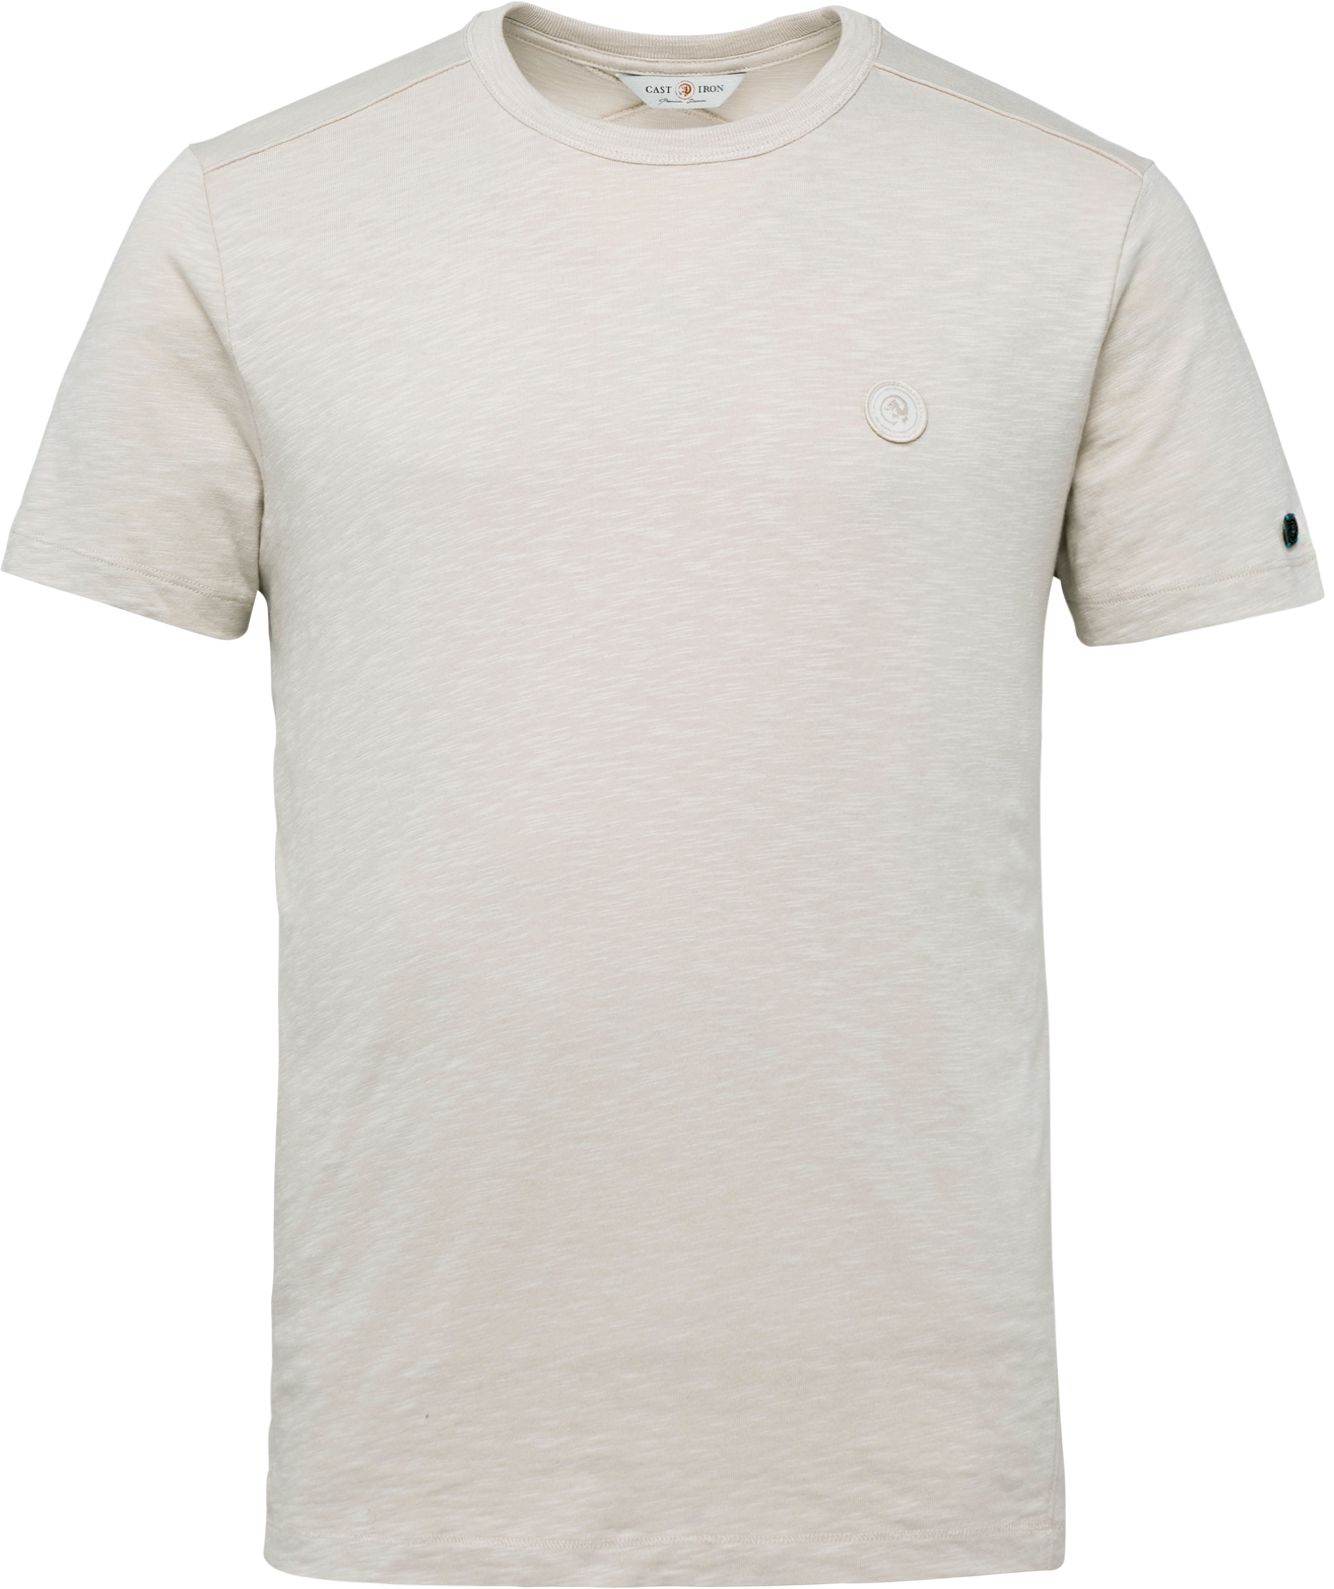 Cast Iron T Shirt Off-White size L